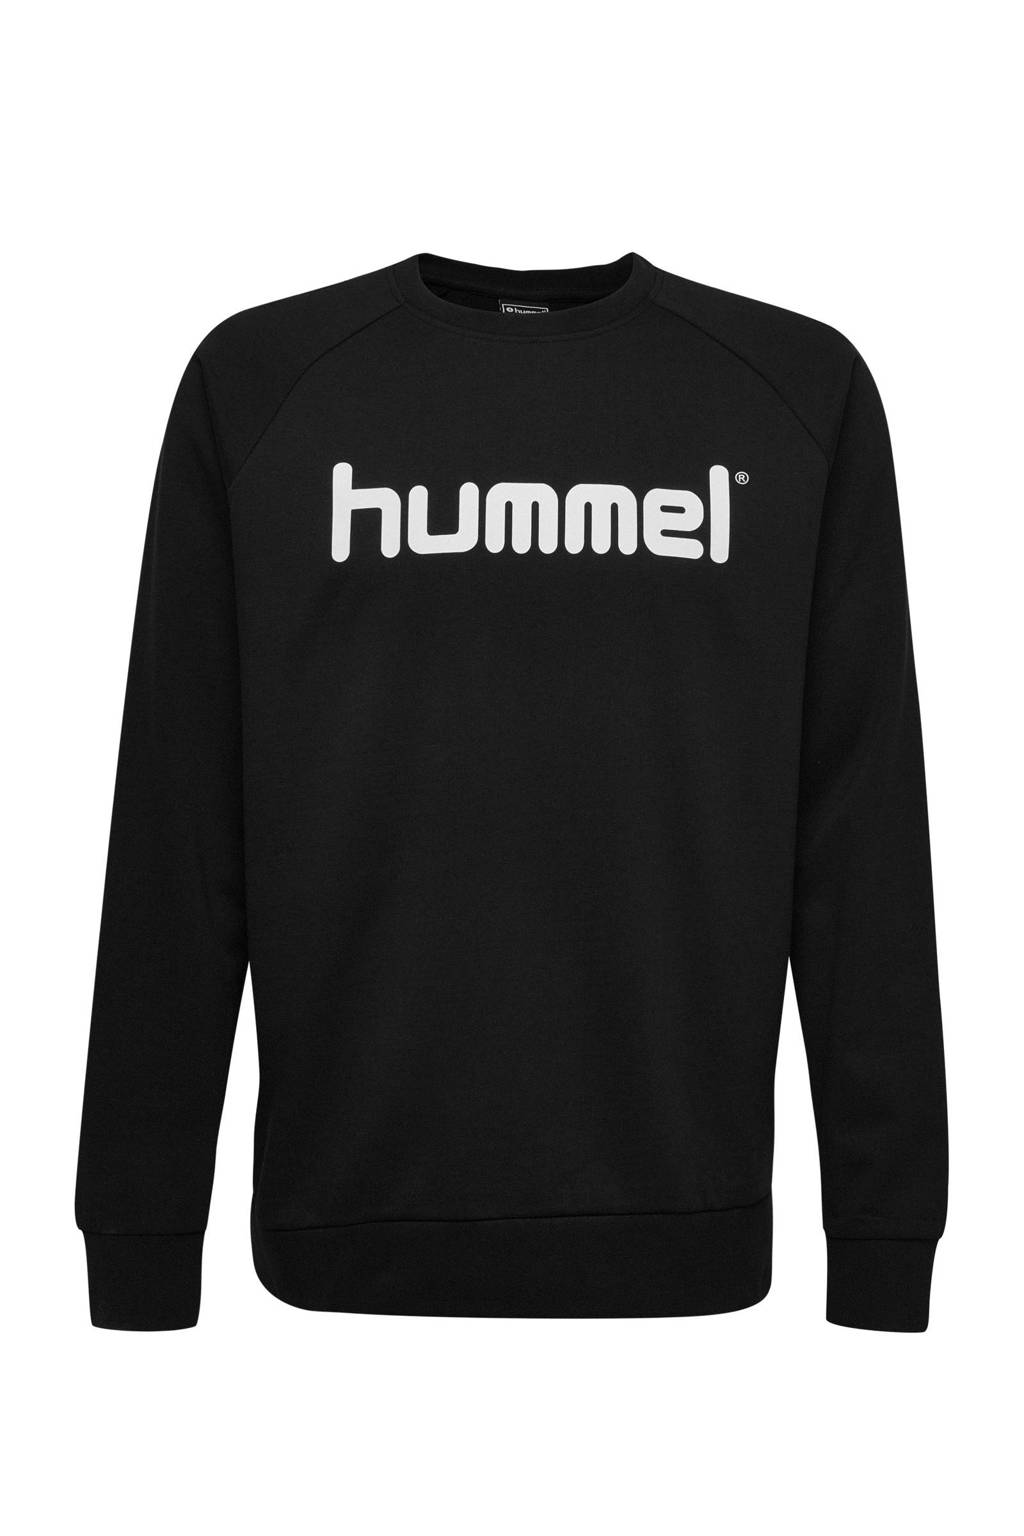 hummel sweater zwart